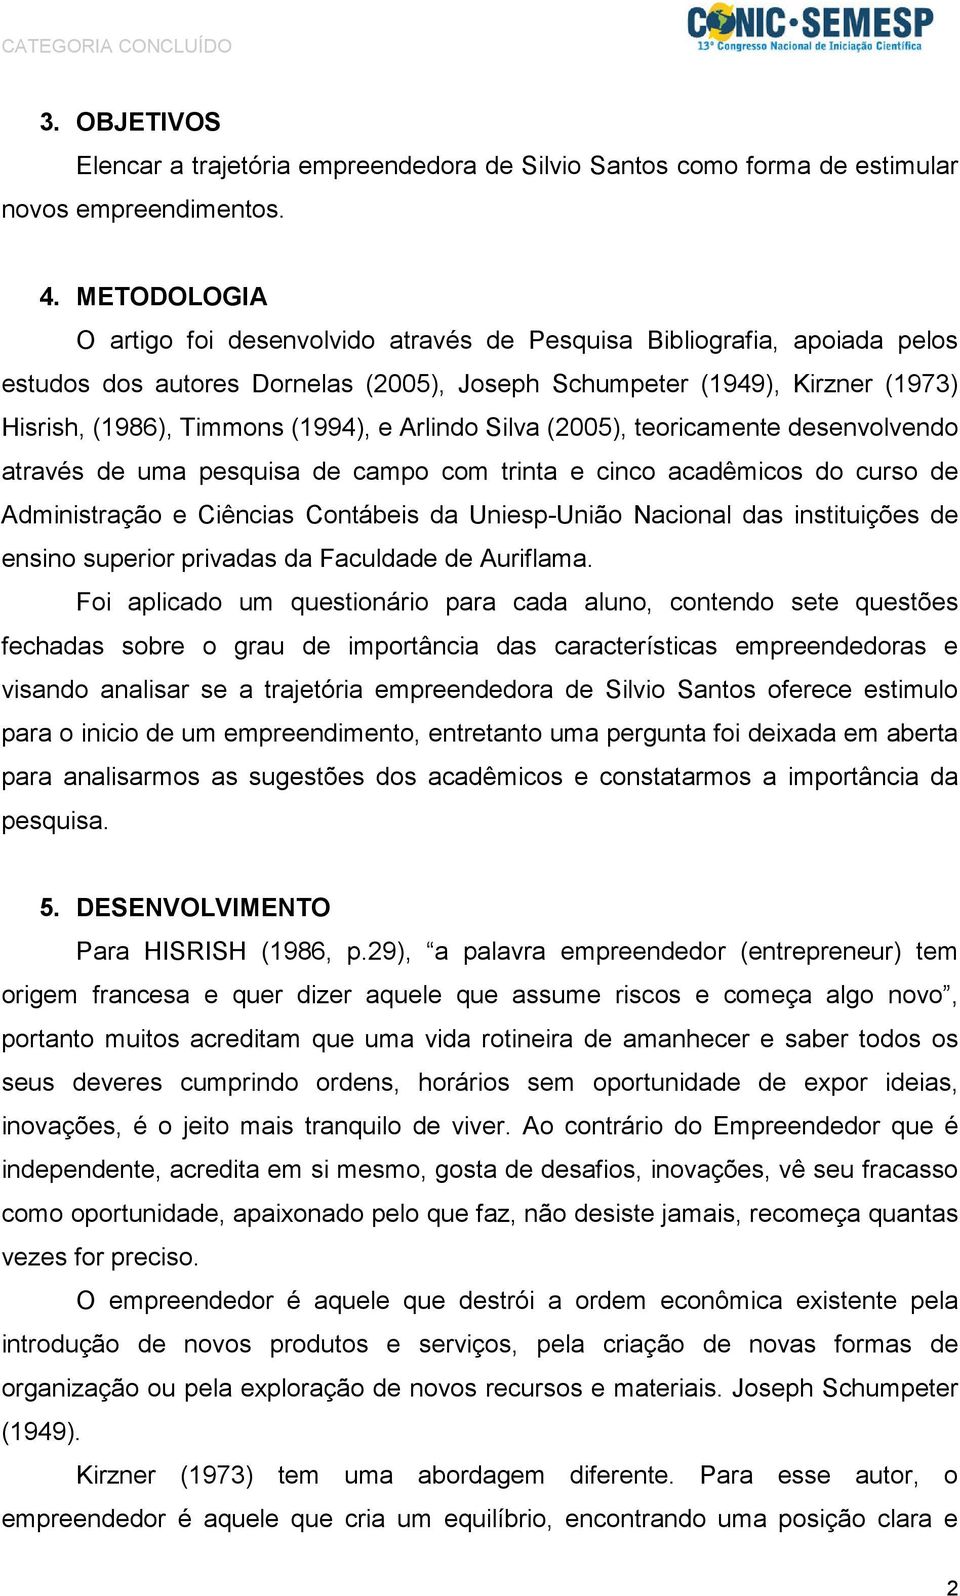 Arlindo Silva (2005), teoricamente desenvolvendo através de uma pesquisa de campo com trinta e cinco acadêmicos do curso de Administração e Ciências Contábeis da Uniesp-União Nacional das